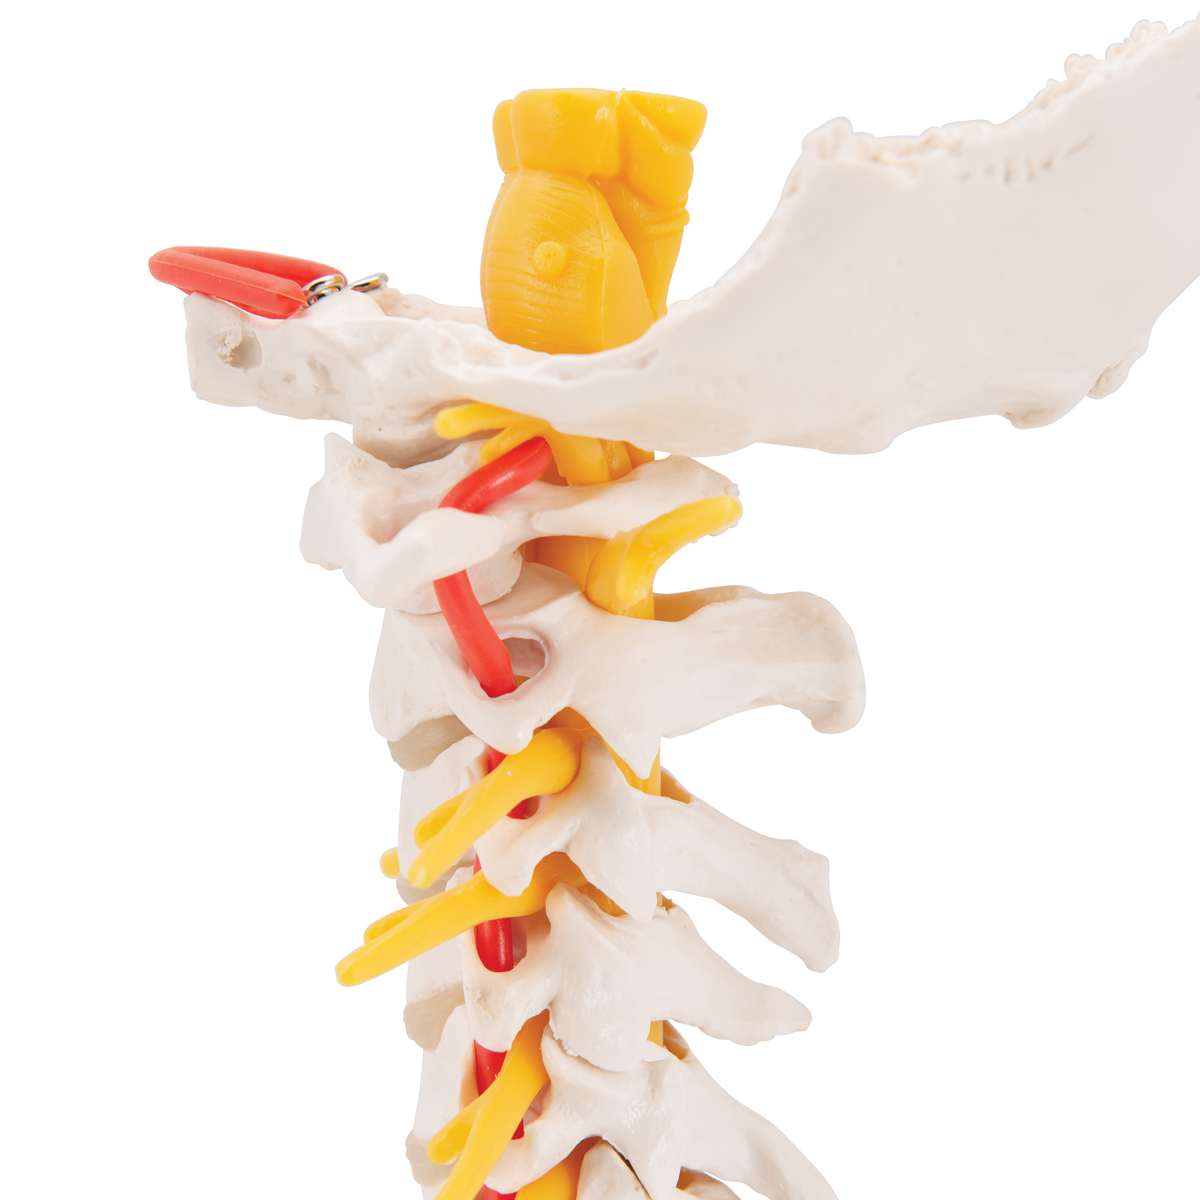 Anatomical Teaching Models Plastic Vertebrae Model Cervical Spinal